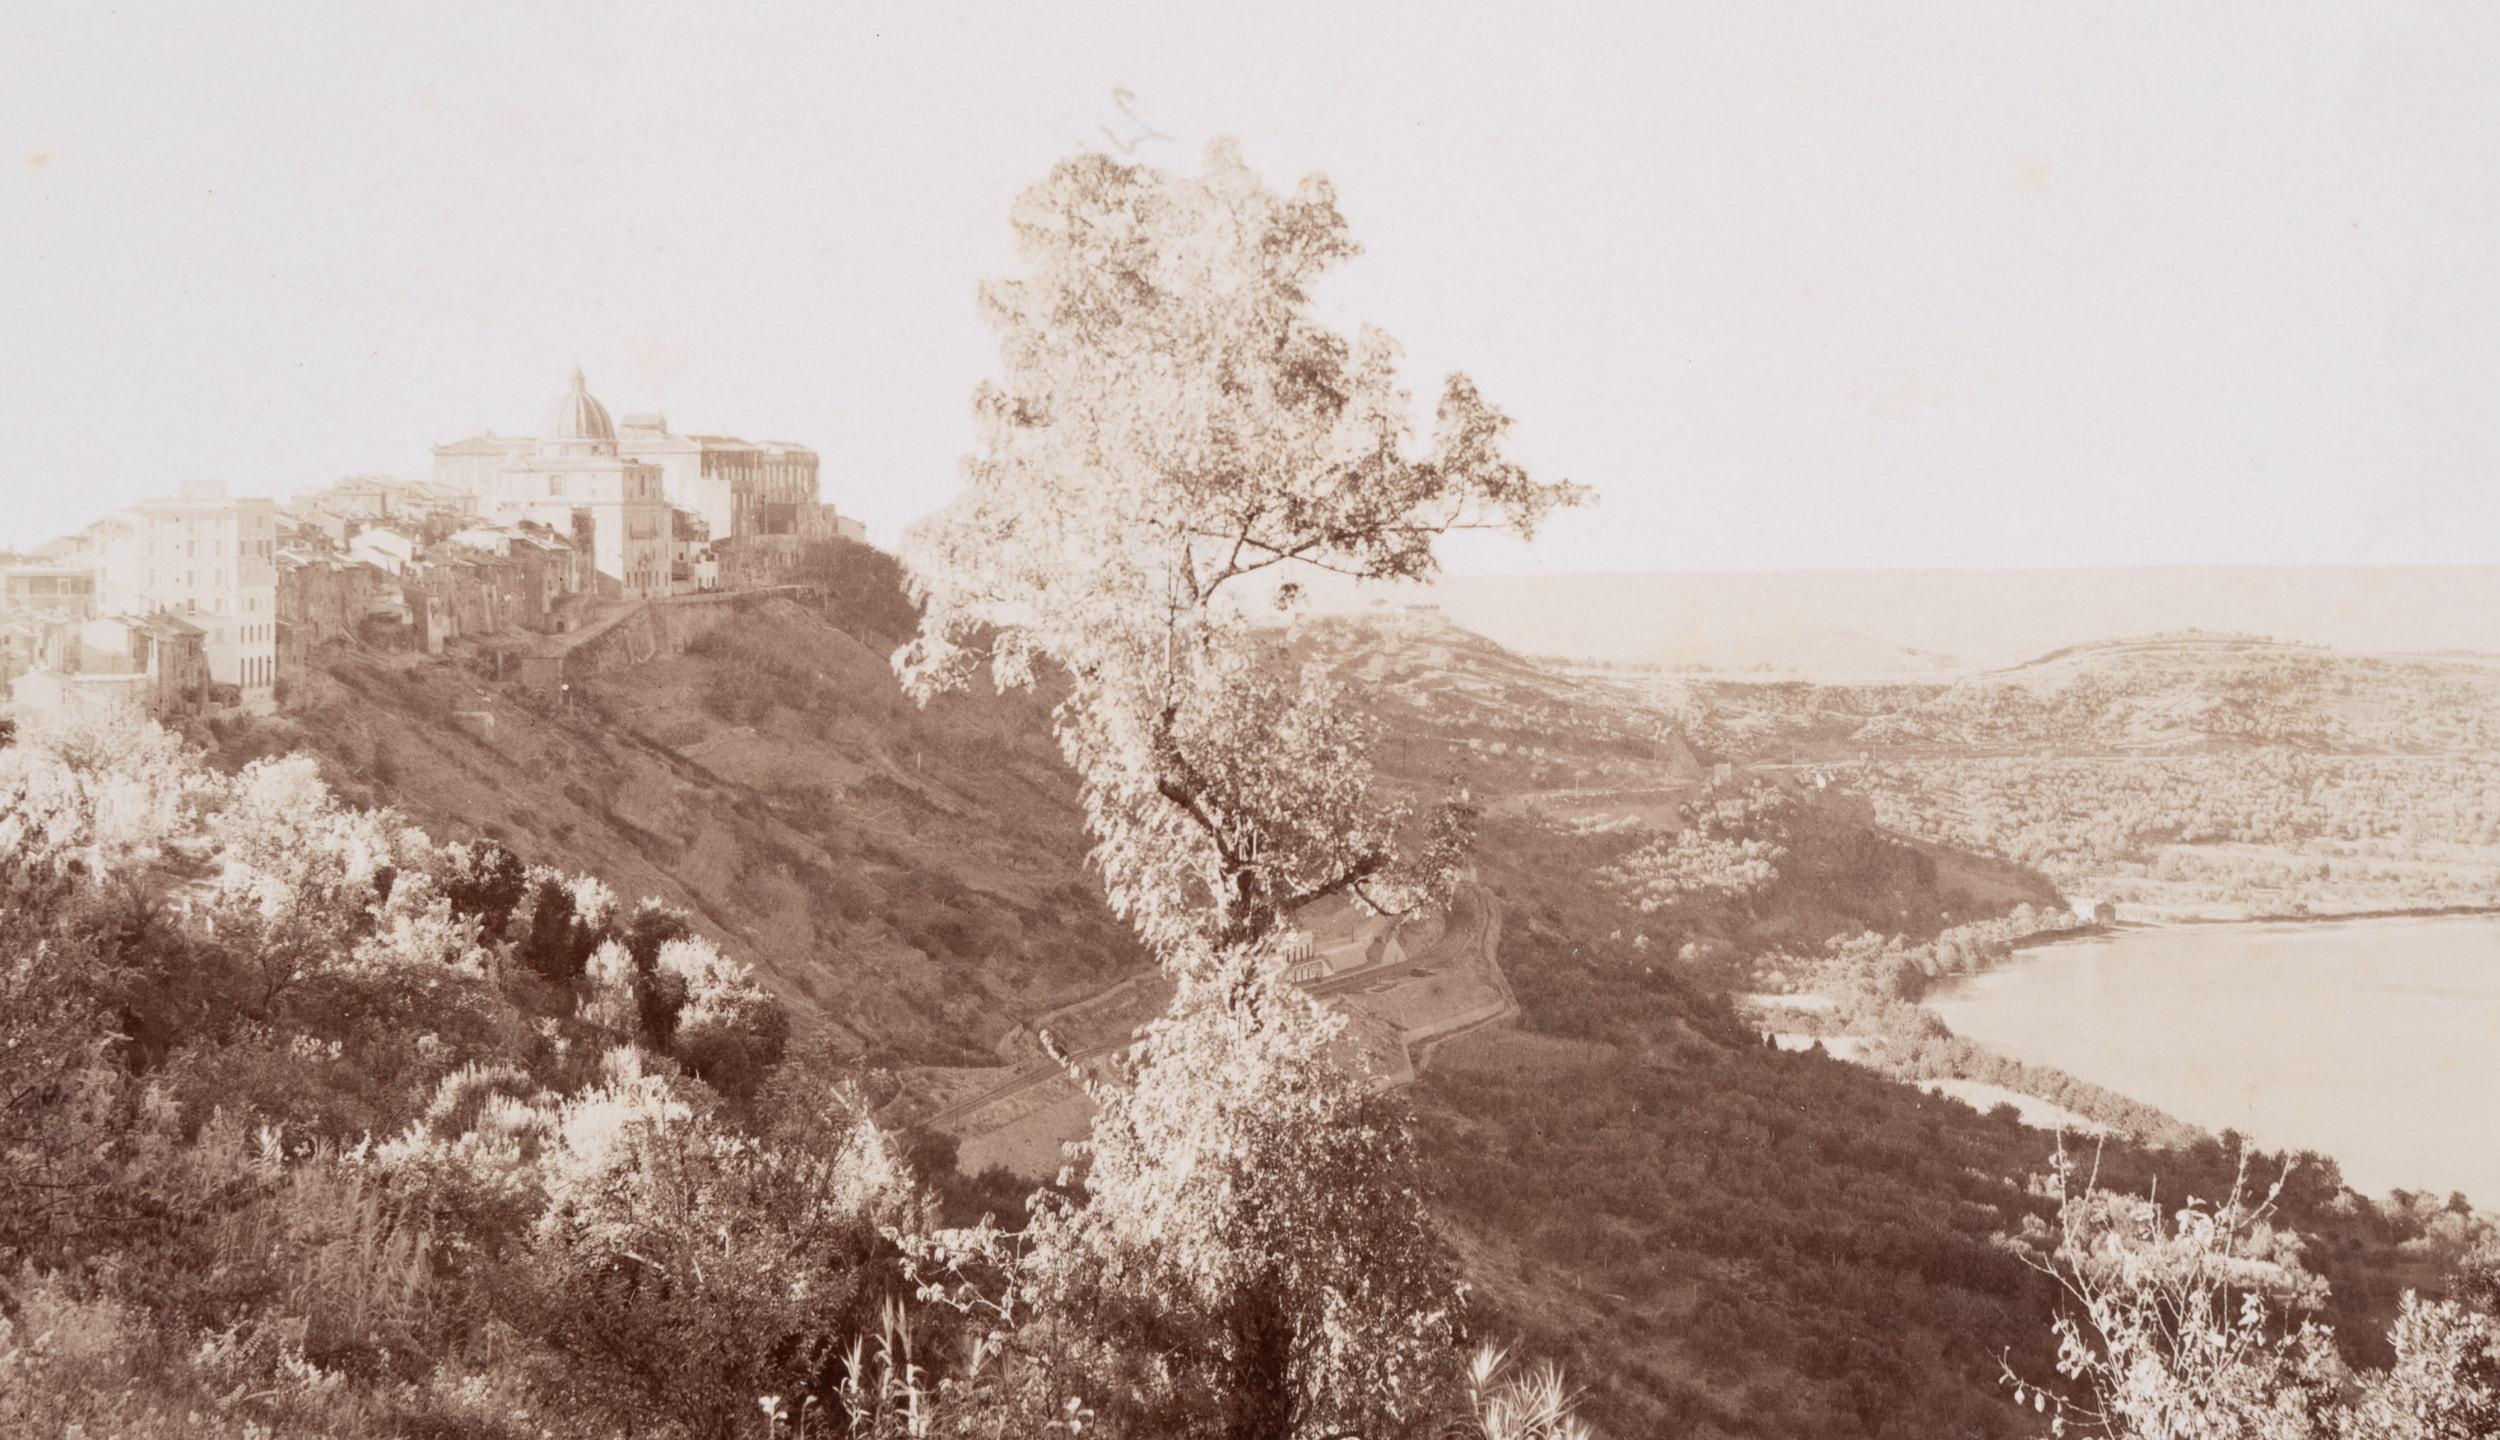 Castel Gandolfo am See Albano – Photograph von Domenico Anderson